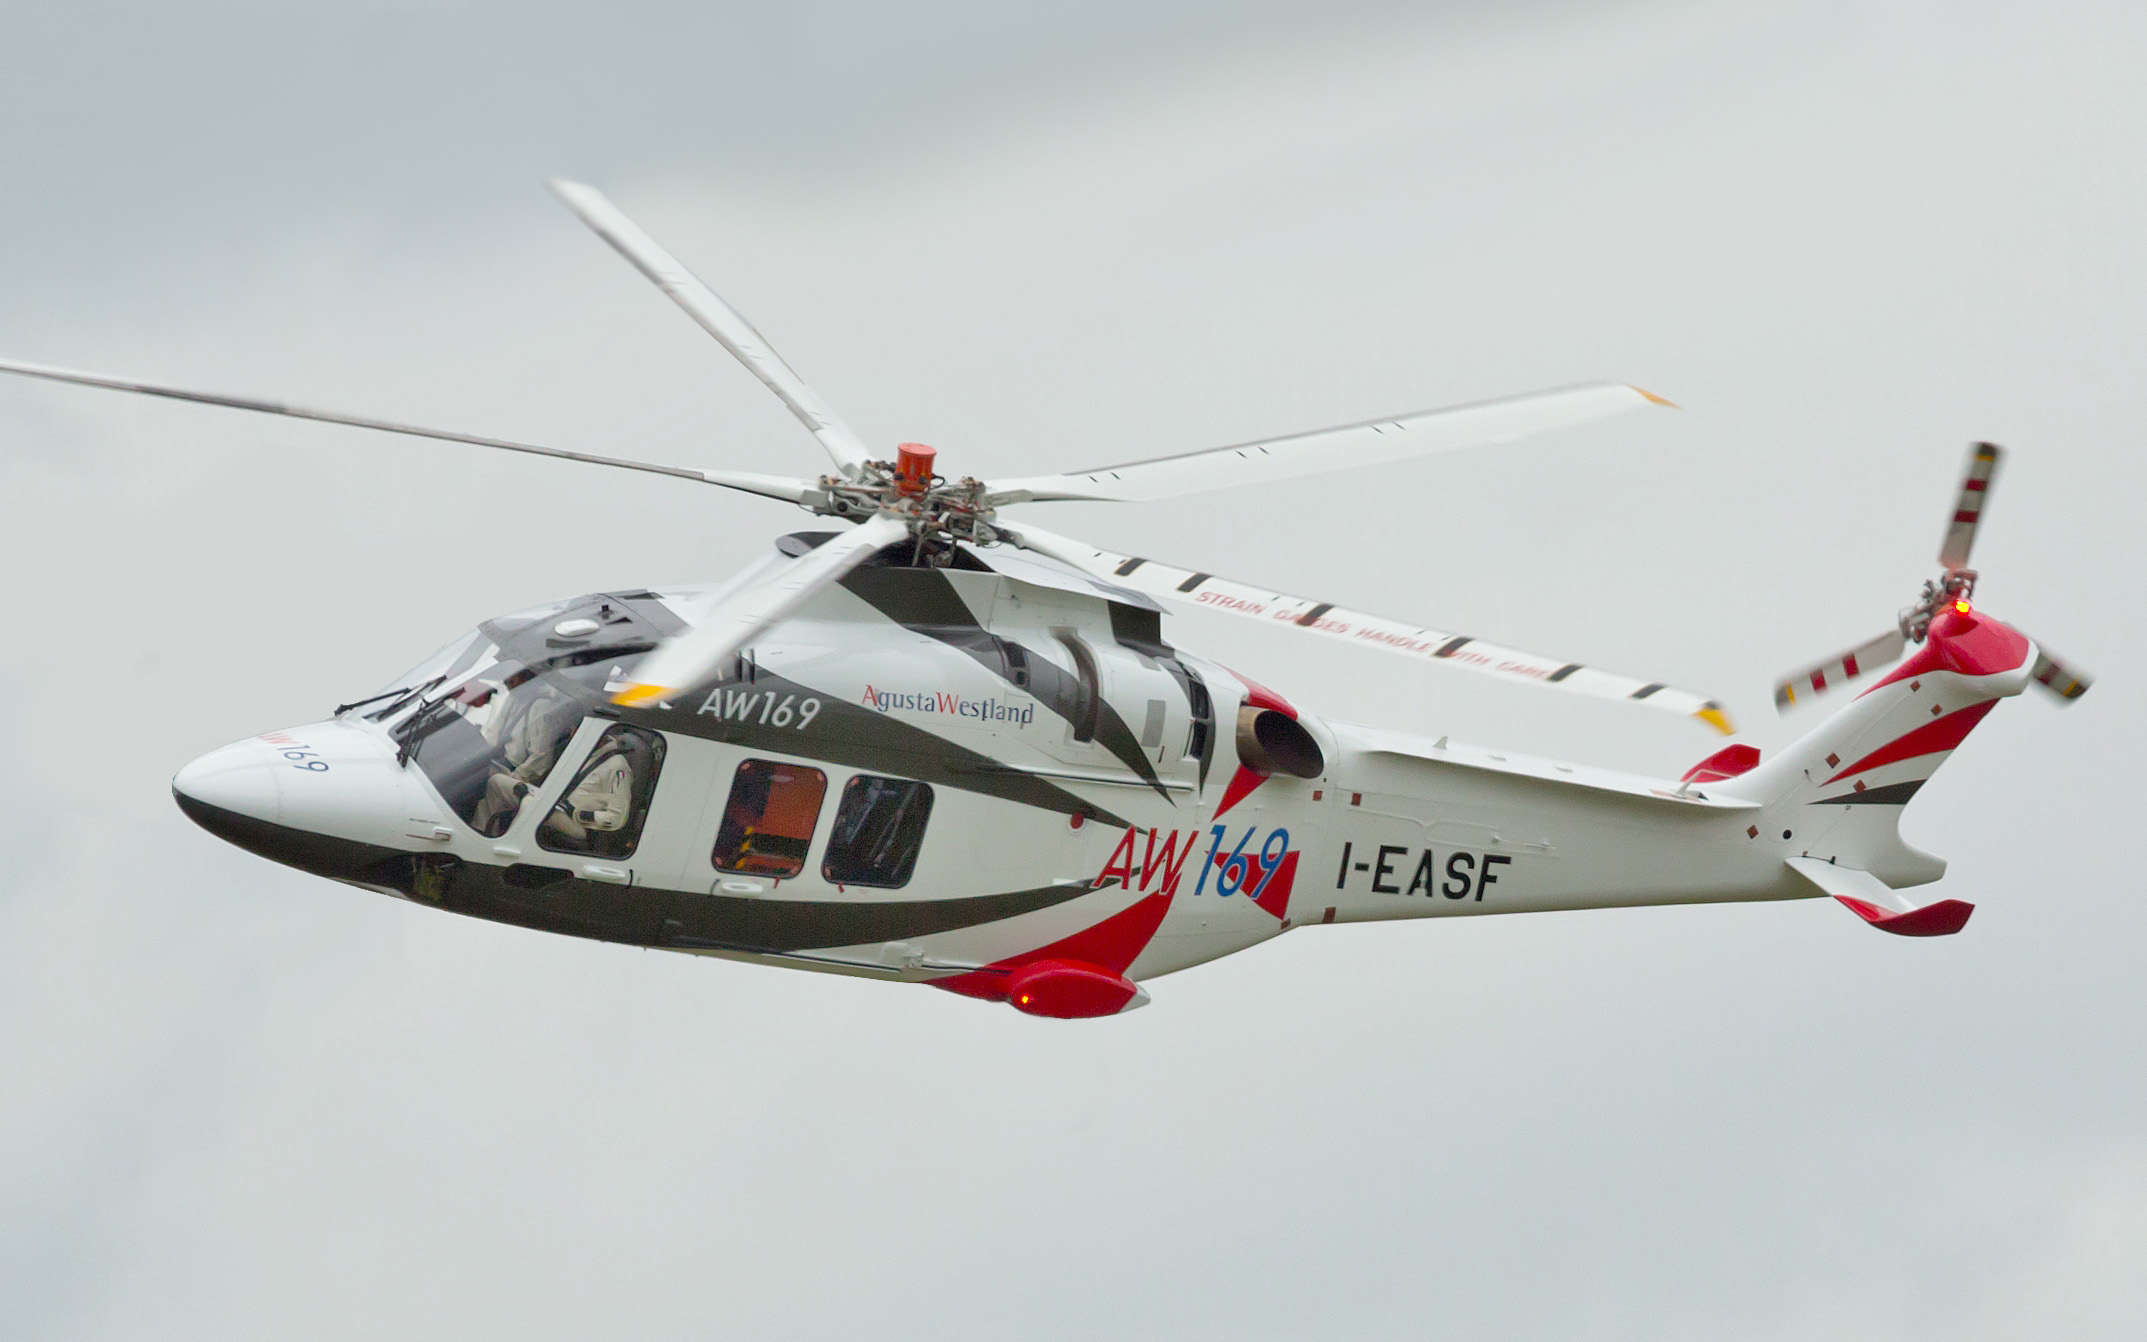 AW169: nuevo helicóptero utilitario para las FF.AA. dominicanas